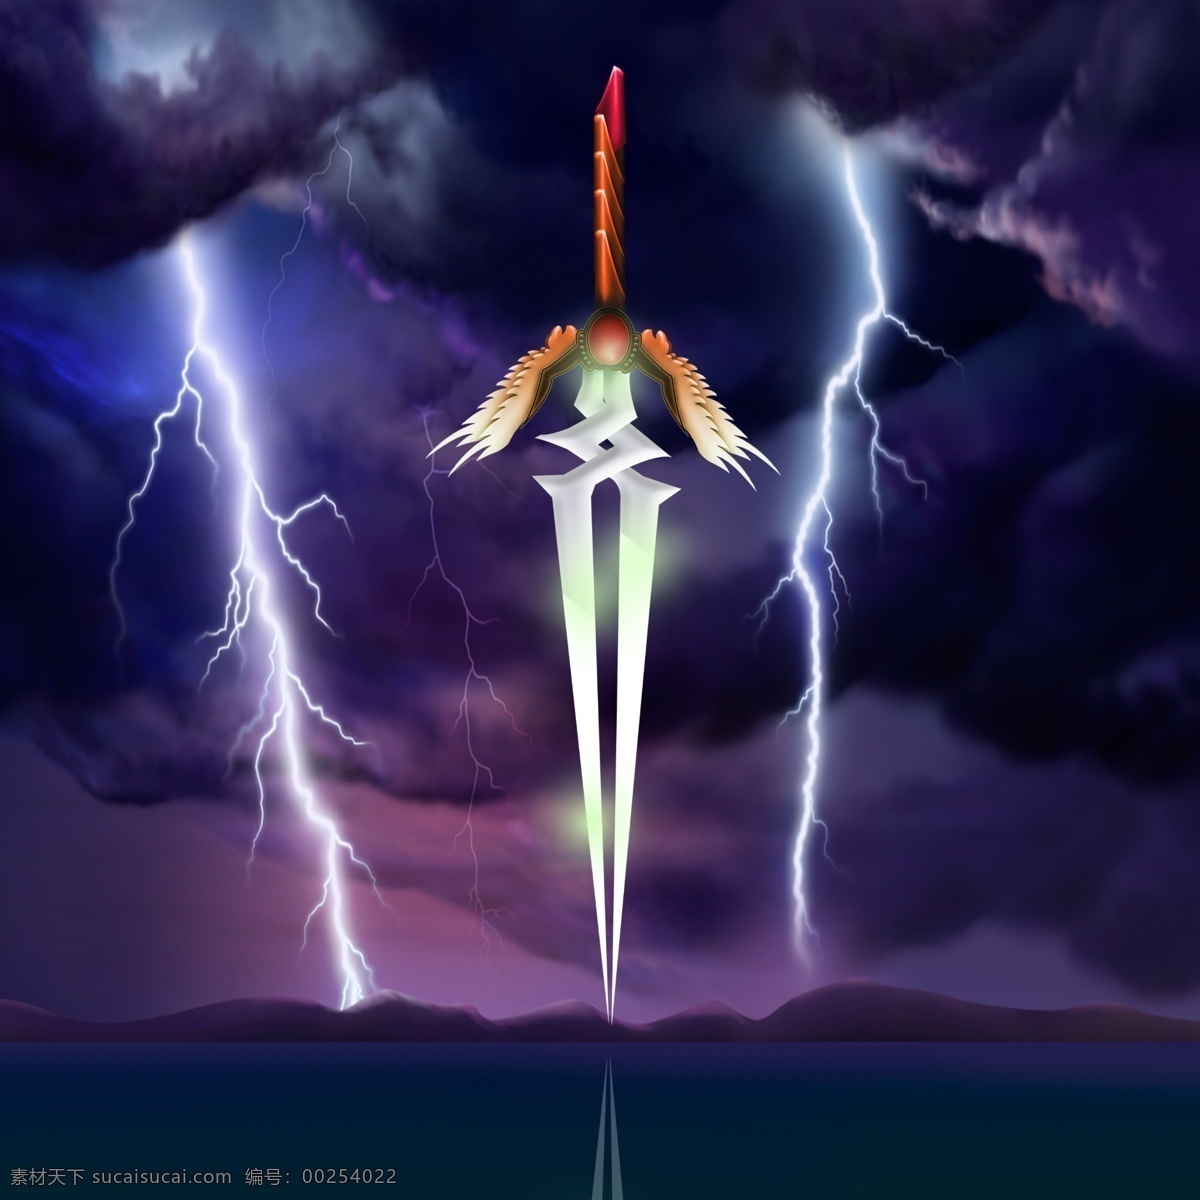 凤凰双刃 wow 魔兽世界 武器 手绘 闪电 网游 广告设计模板 源文件